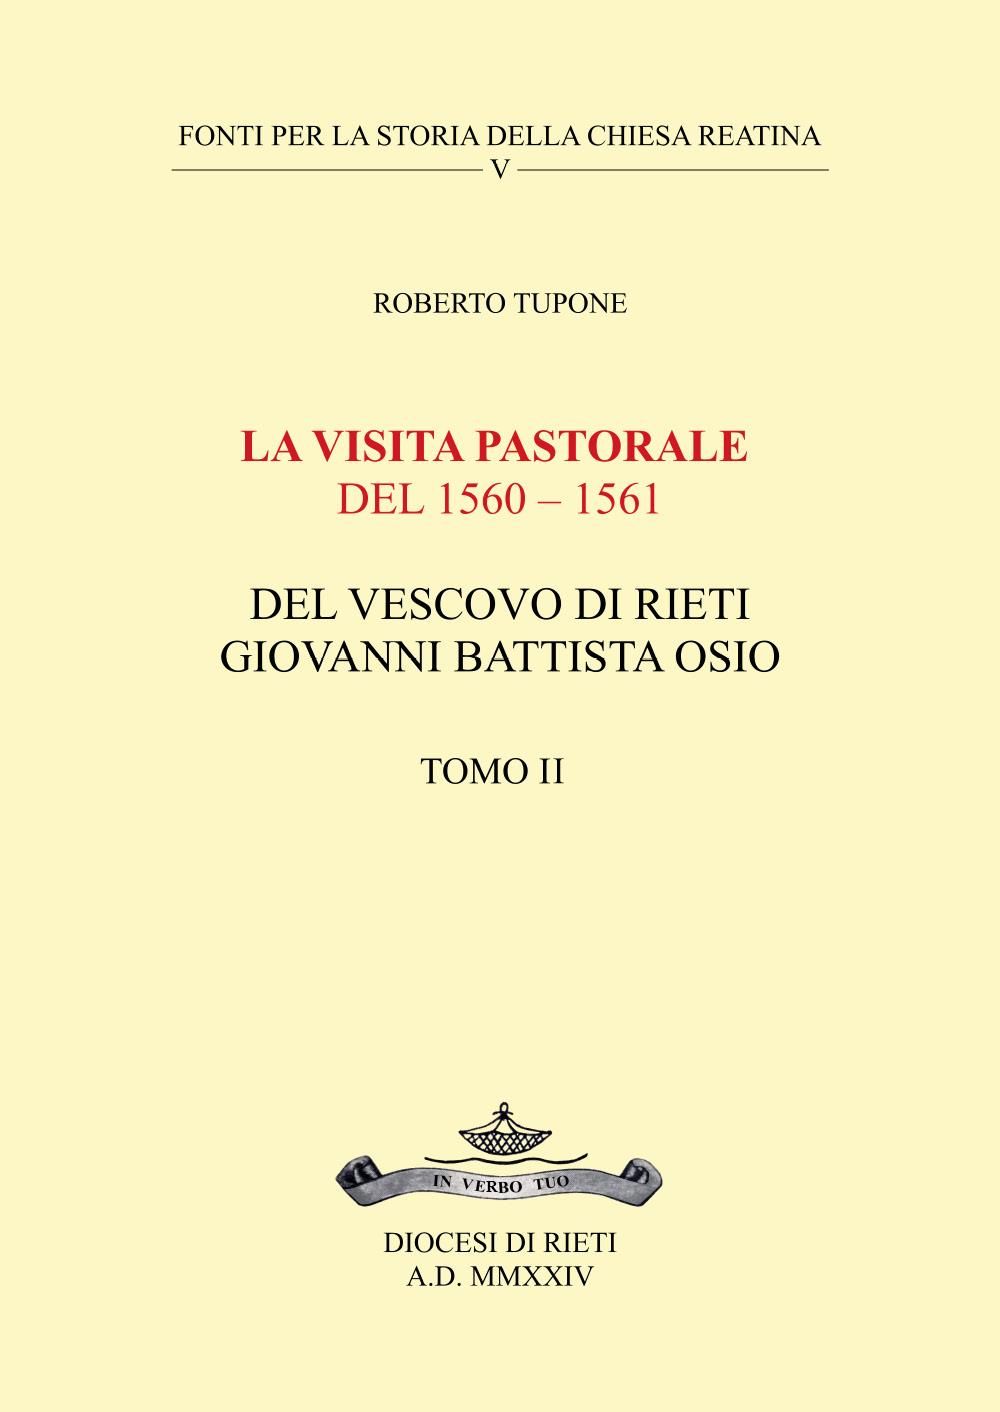 La visita pastorale del 1560 – 1561 del Vescovo di Rieti Giovanni Battista Osio - Tomo II